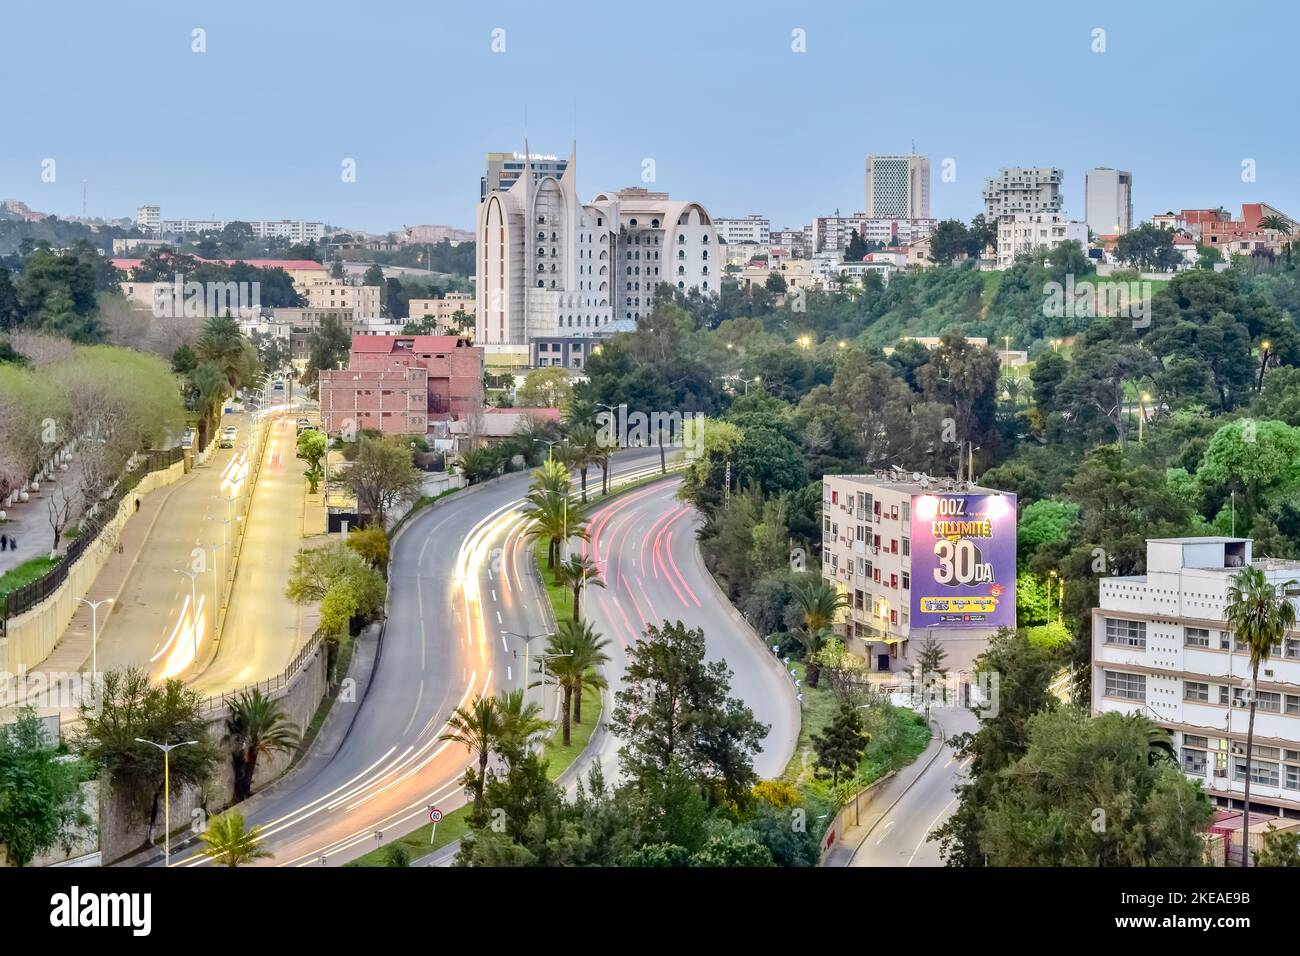 L'hotel Golden Palace è in costruzione e la torre AGB sull'autostrada Benaknoun. Una vista aerea a lunga esposizione con le luci delle auto in movimento, gli alberi e il cielo blu. Foto Stock